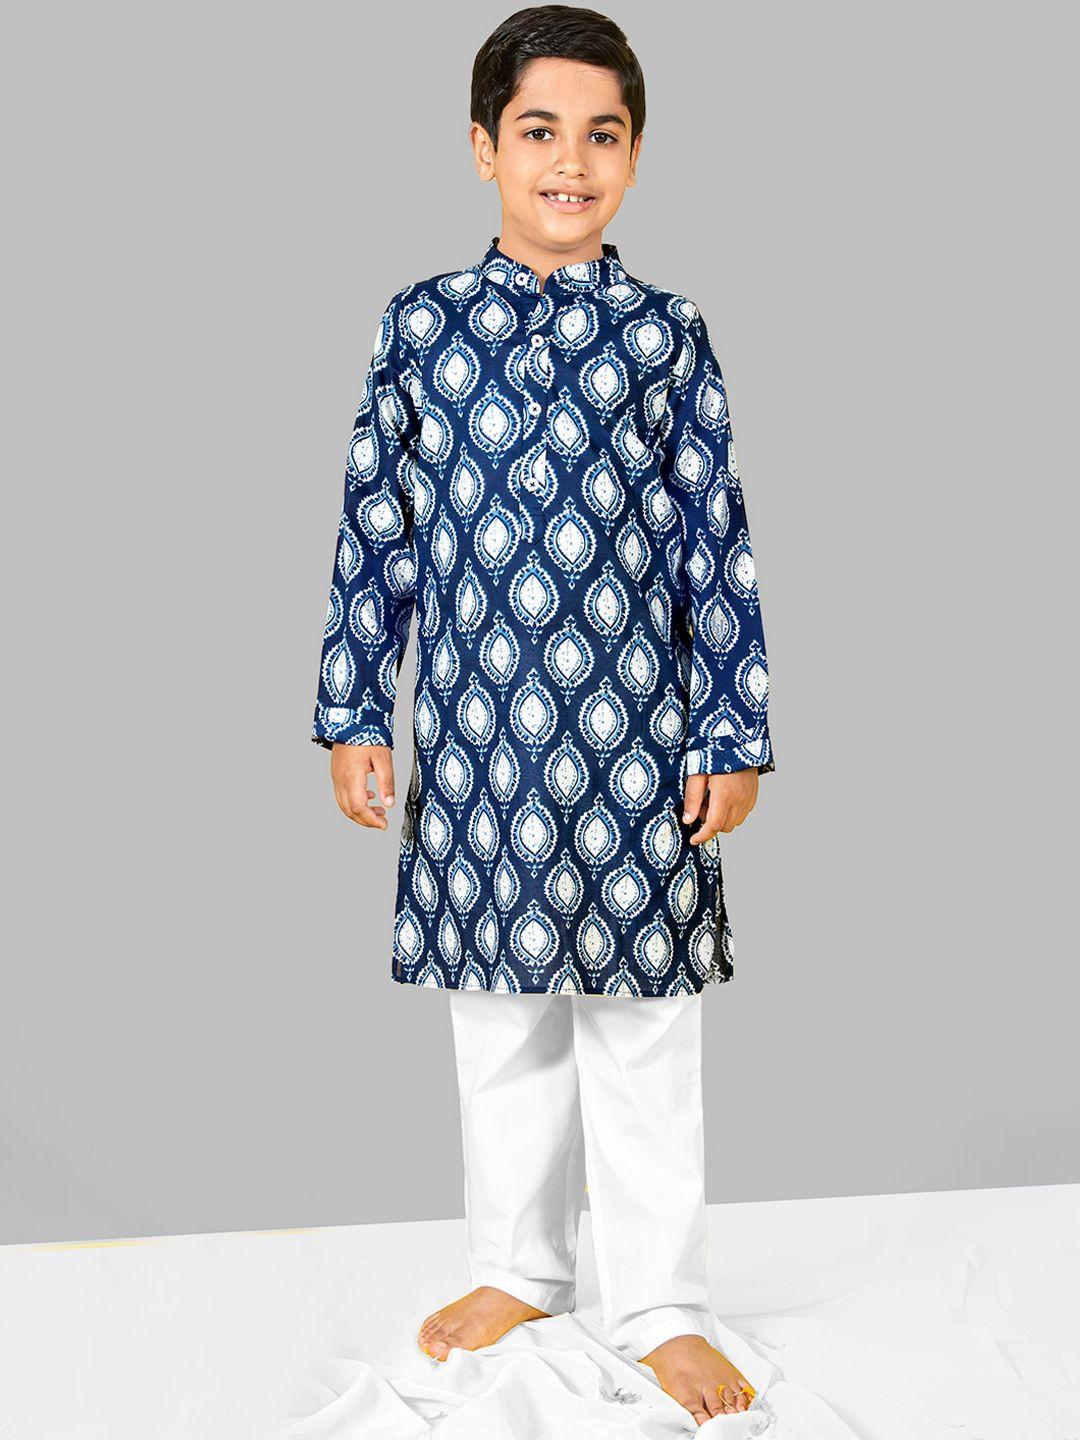 naughty-ninos-boys-ethnic-motifs-printed-regular-kurta-with-pyjamas